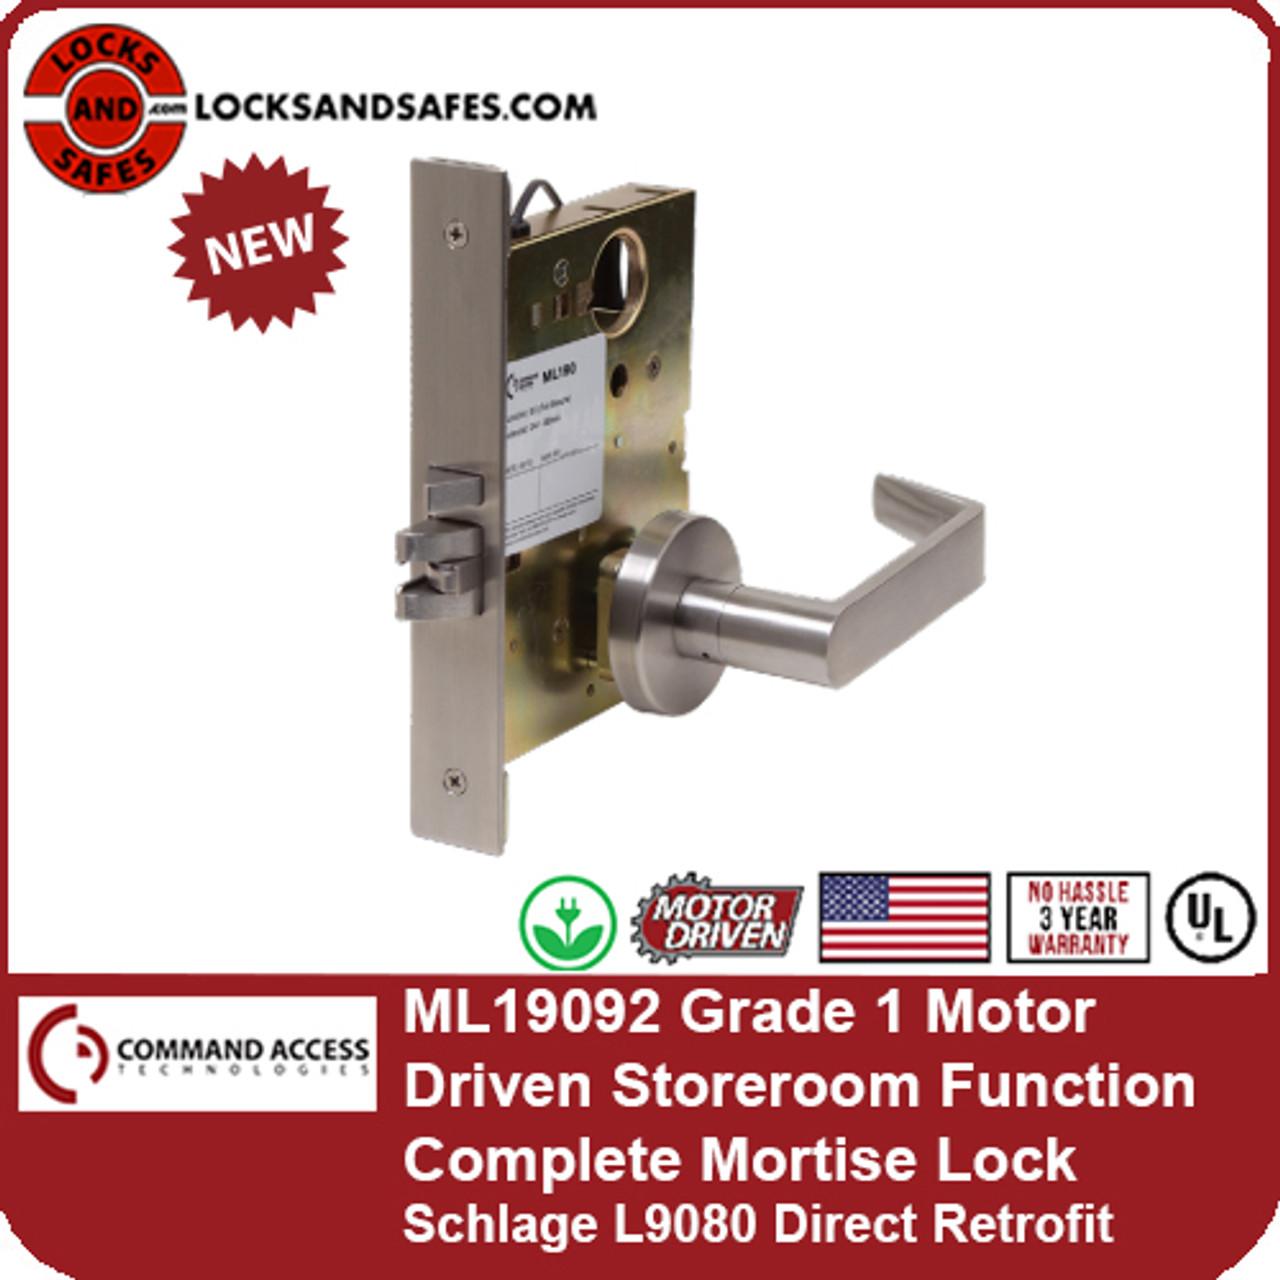 Schlage L9453-17 Mortise Entrance Lock